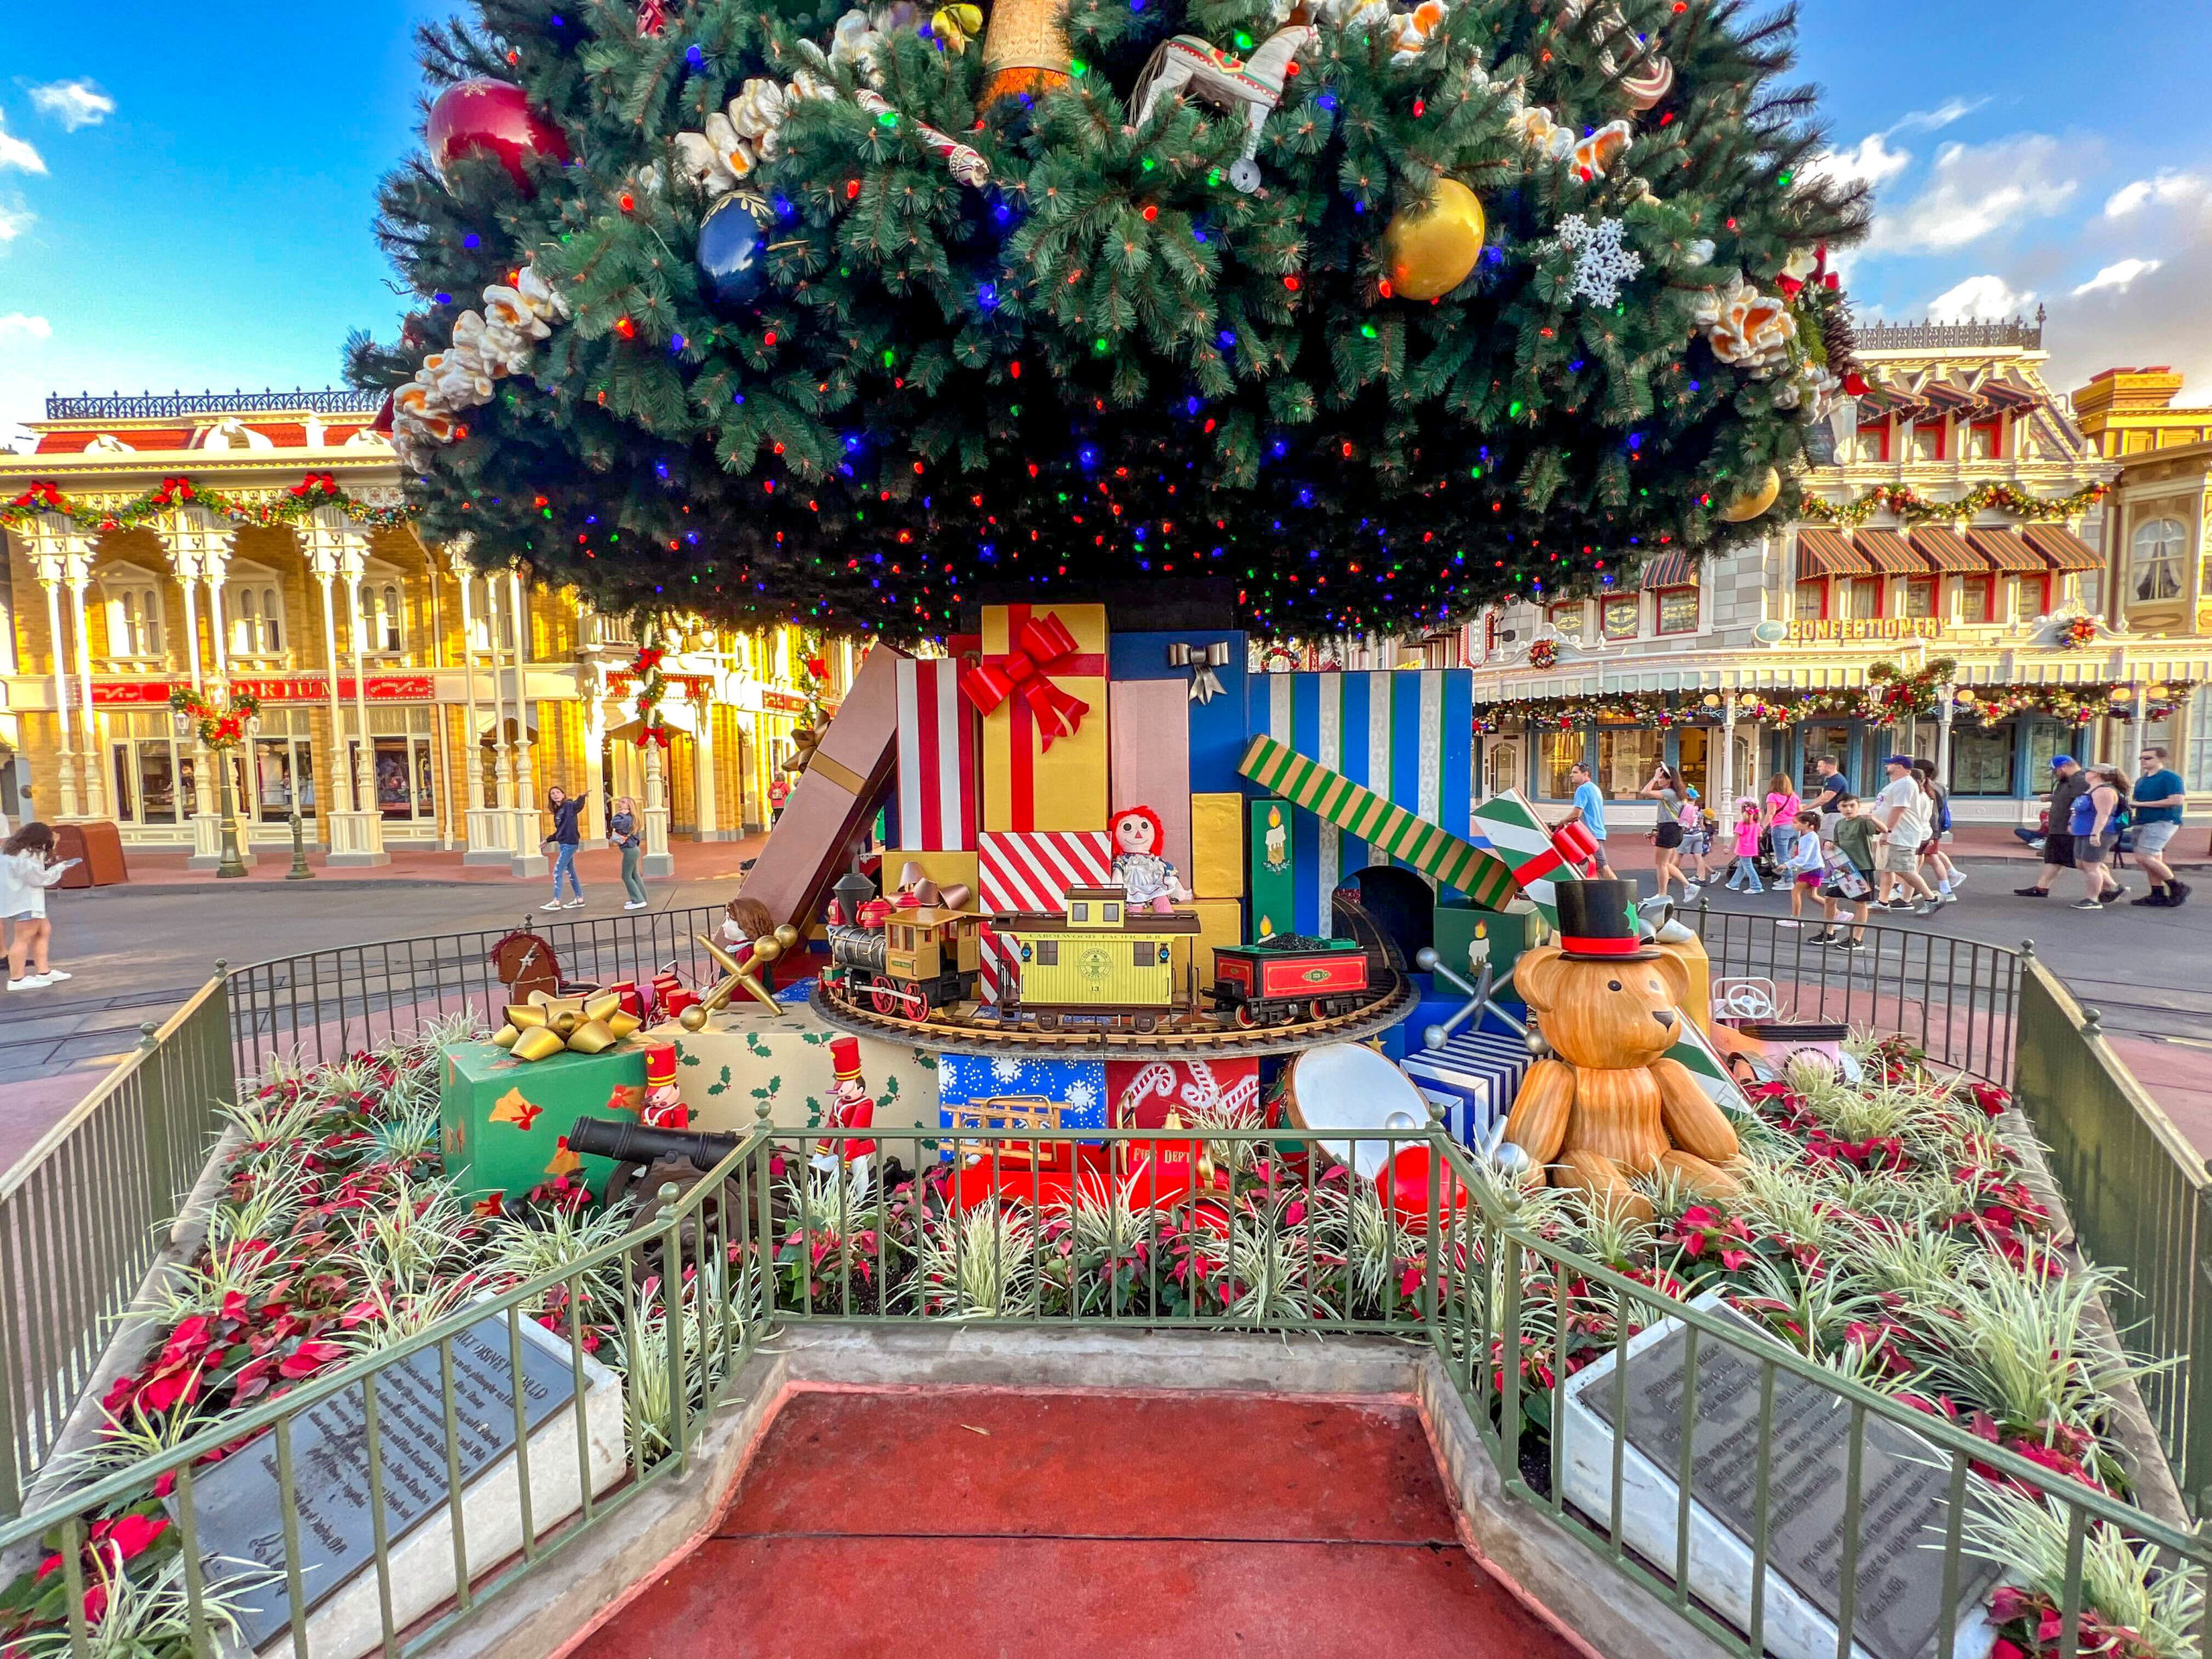 Magic Kingdom's Christmas Tree